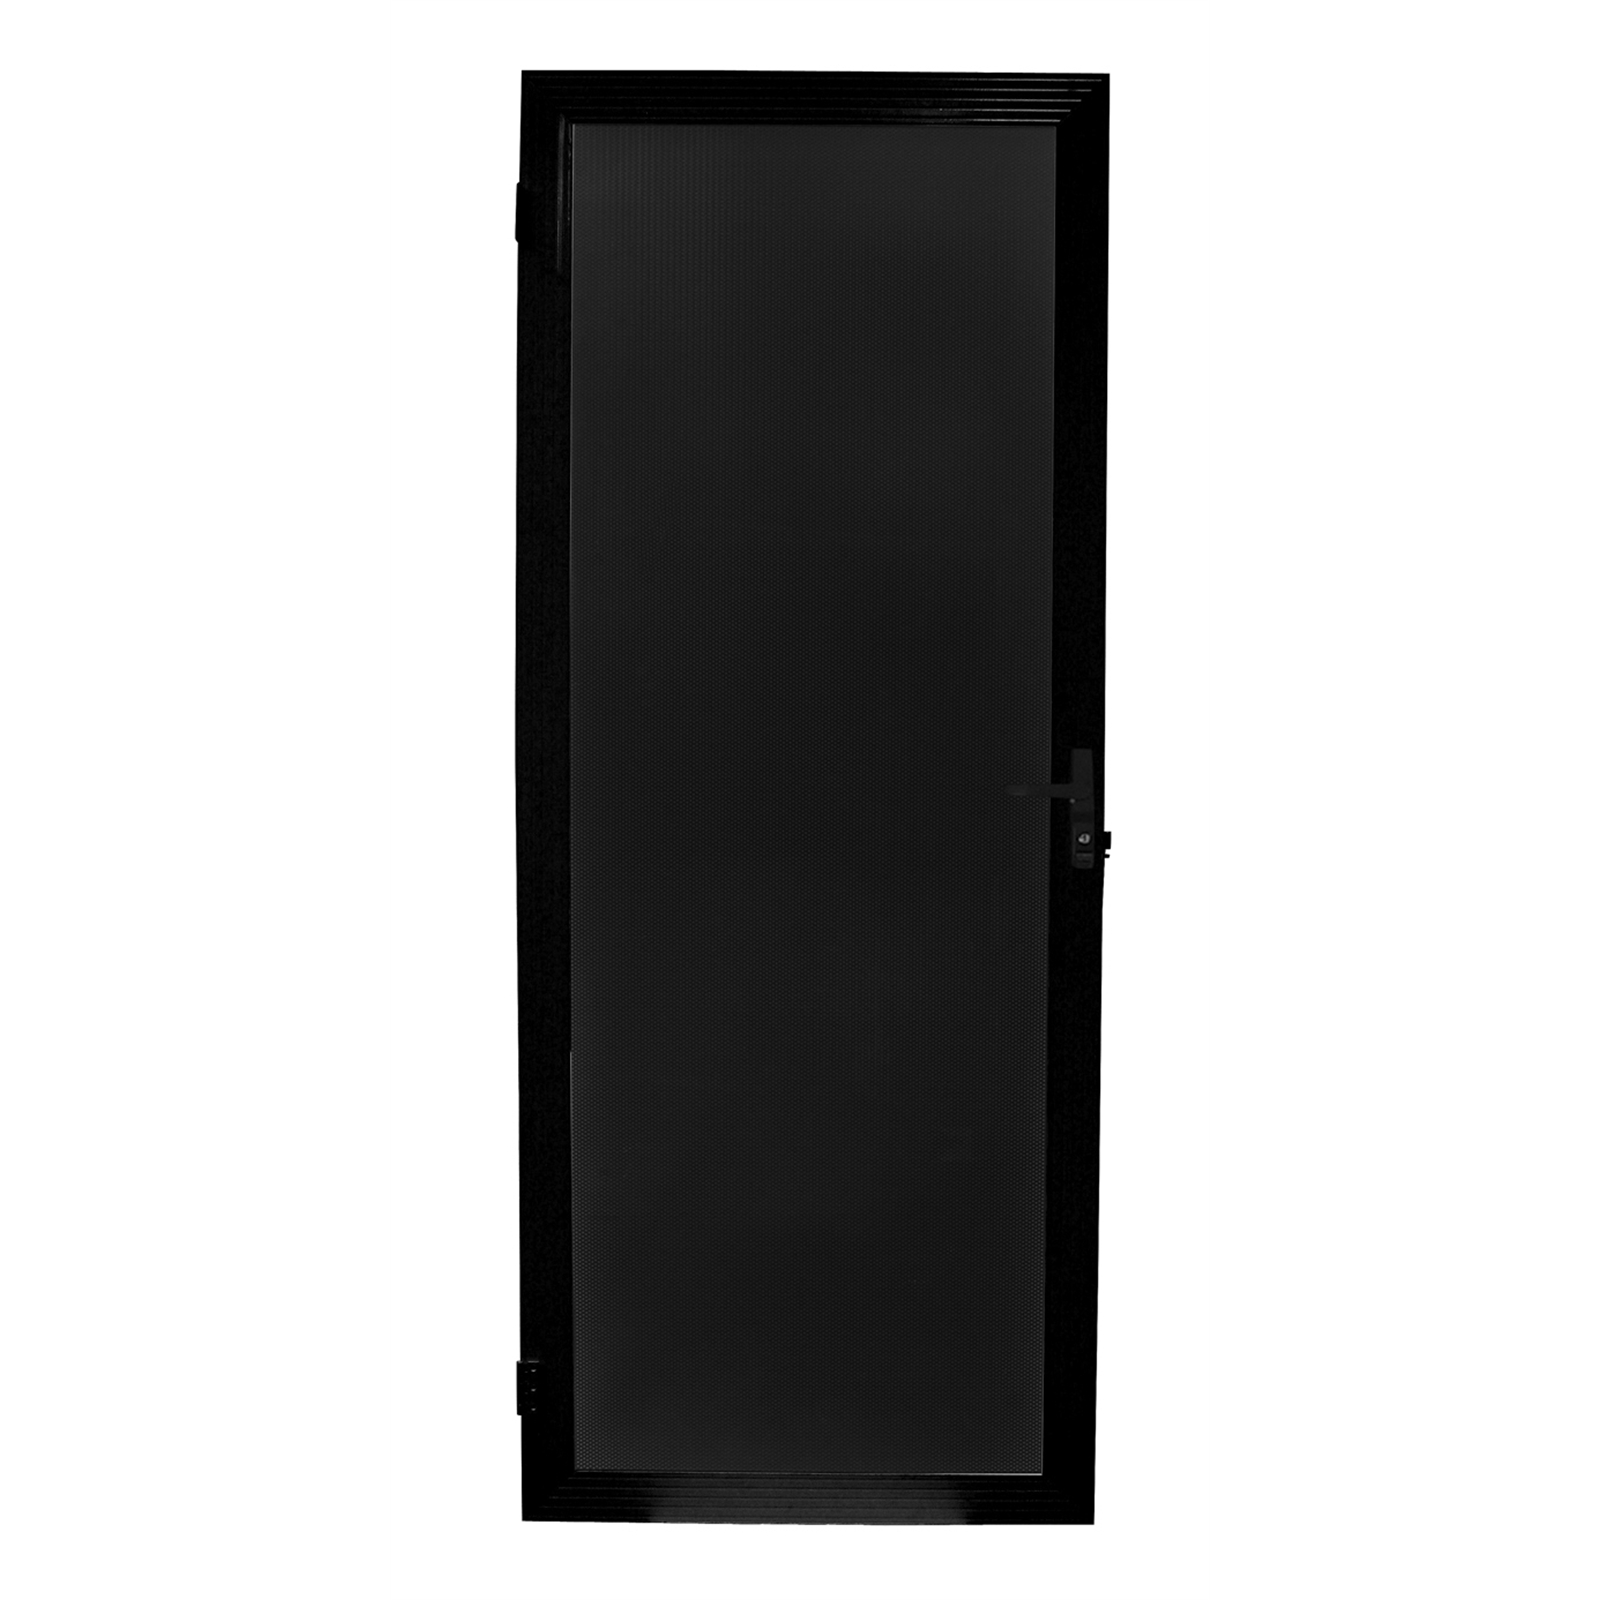 Bastion 2024 x 806mm - 2040 x 820mm Black Aluminium Soho Adjustable Barrier Door